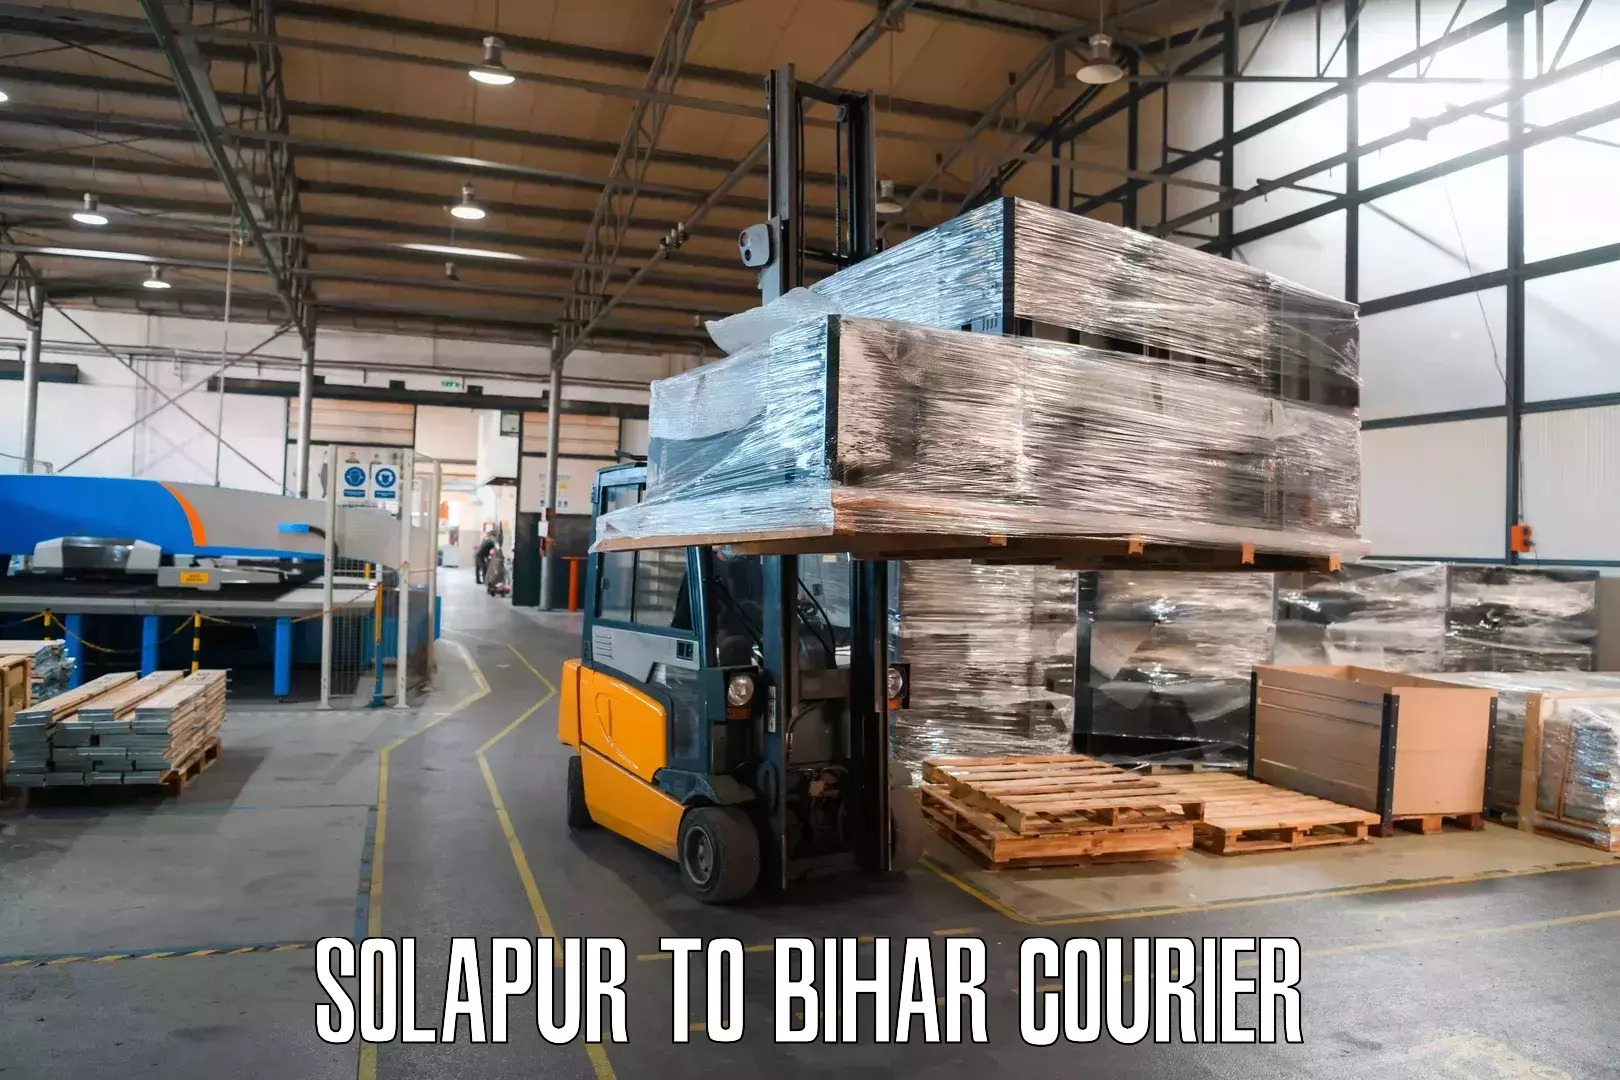 Premium courier services Solapur to Bihar